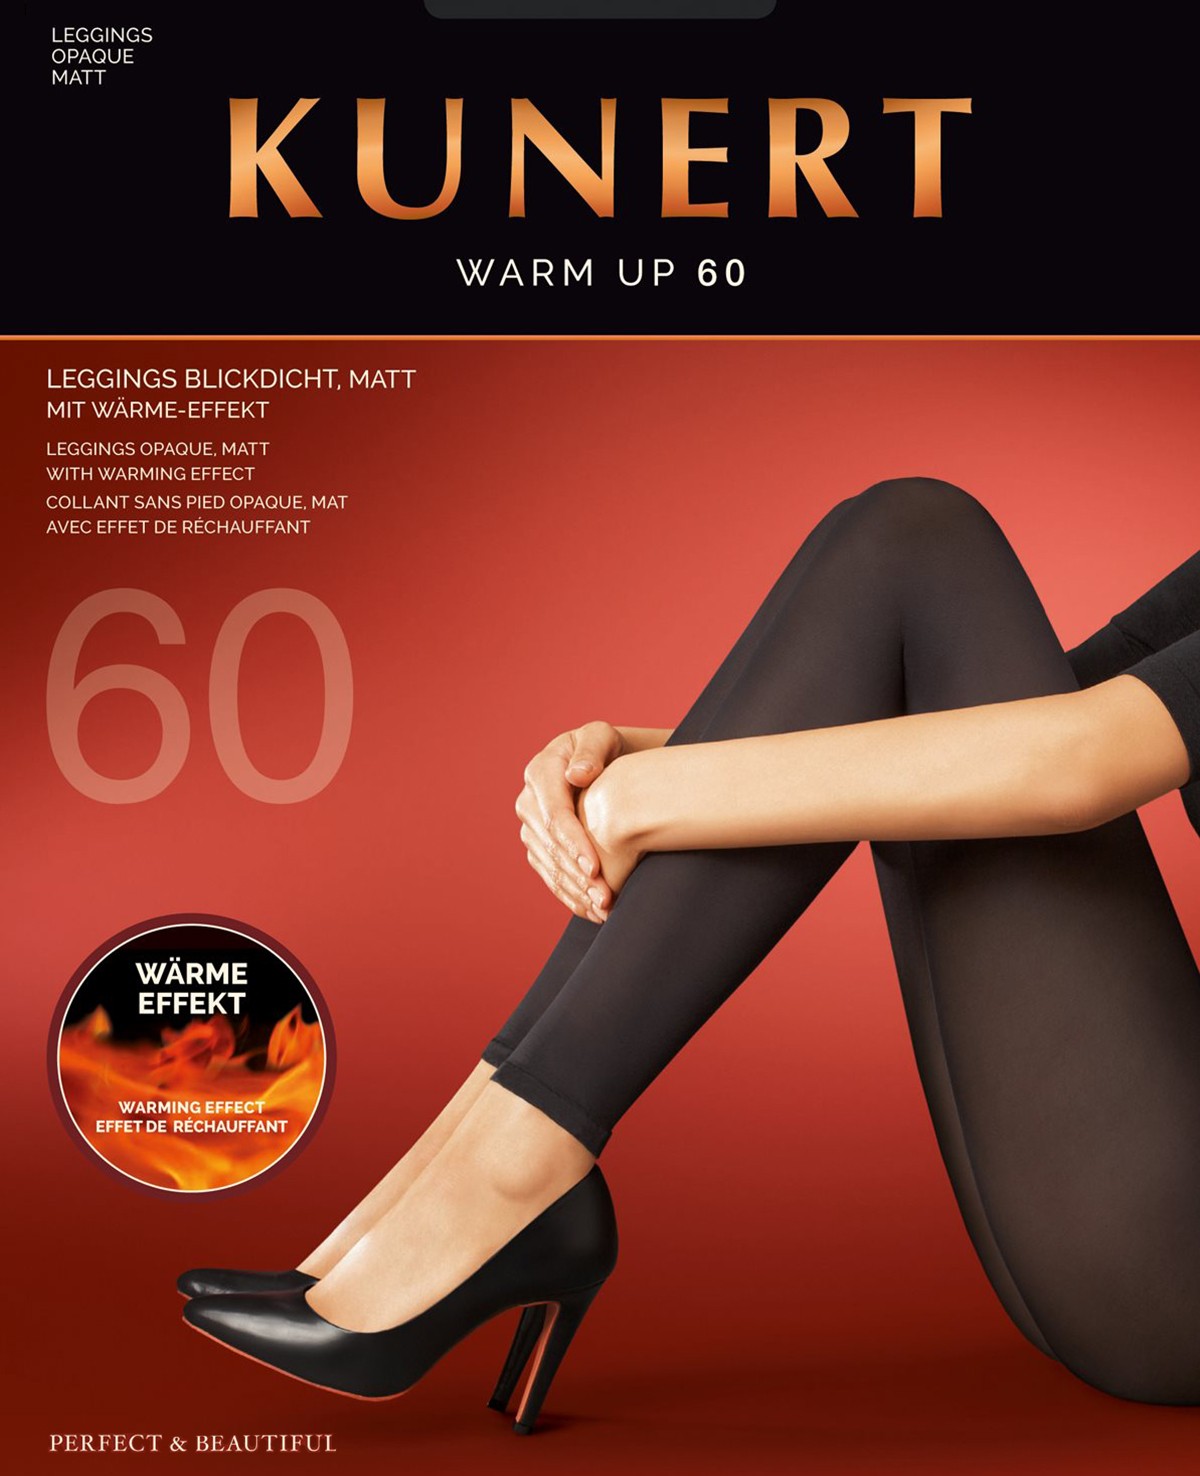 Rsultat de recherche d'images pour "kunert warm up legging"